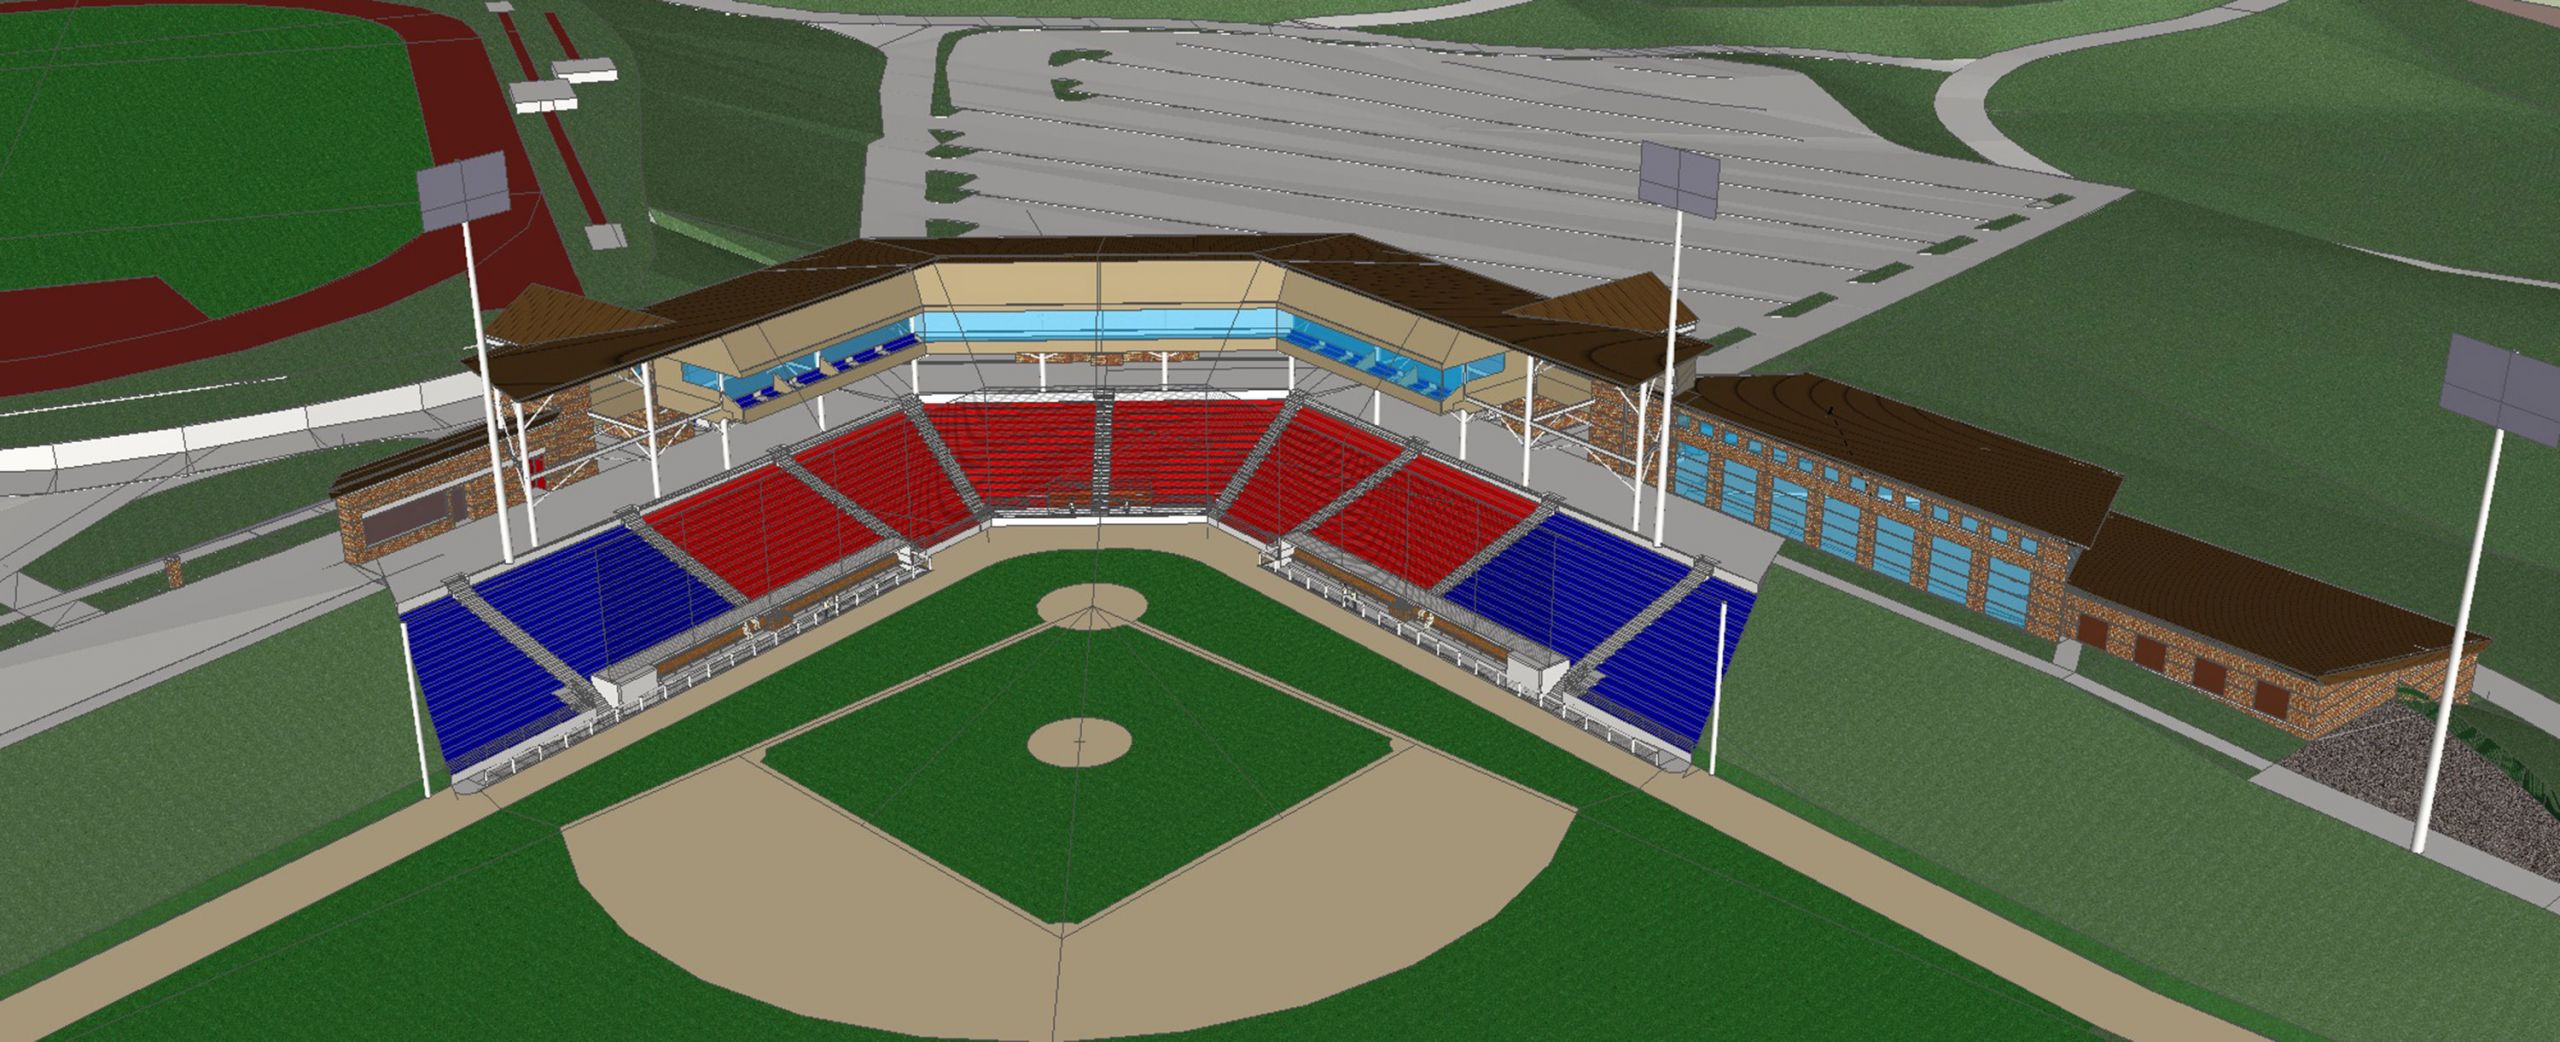 new baseball stadium